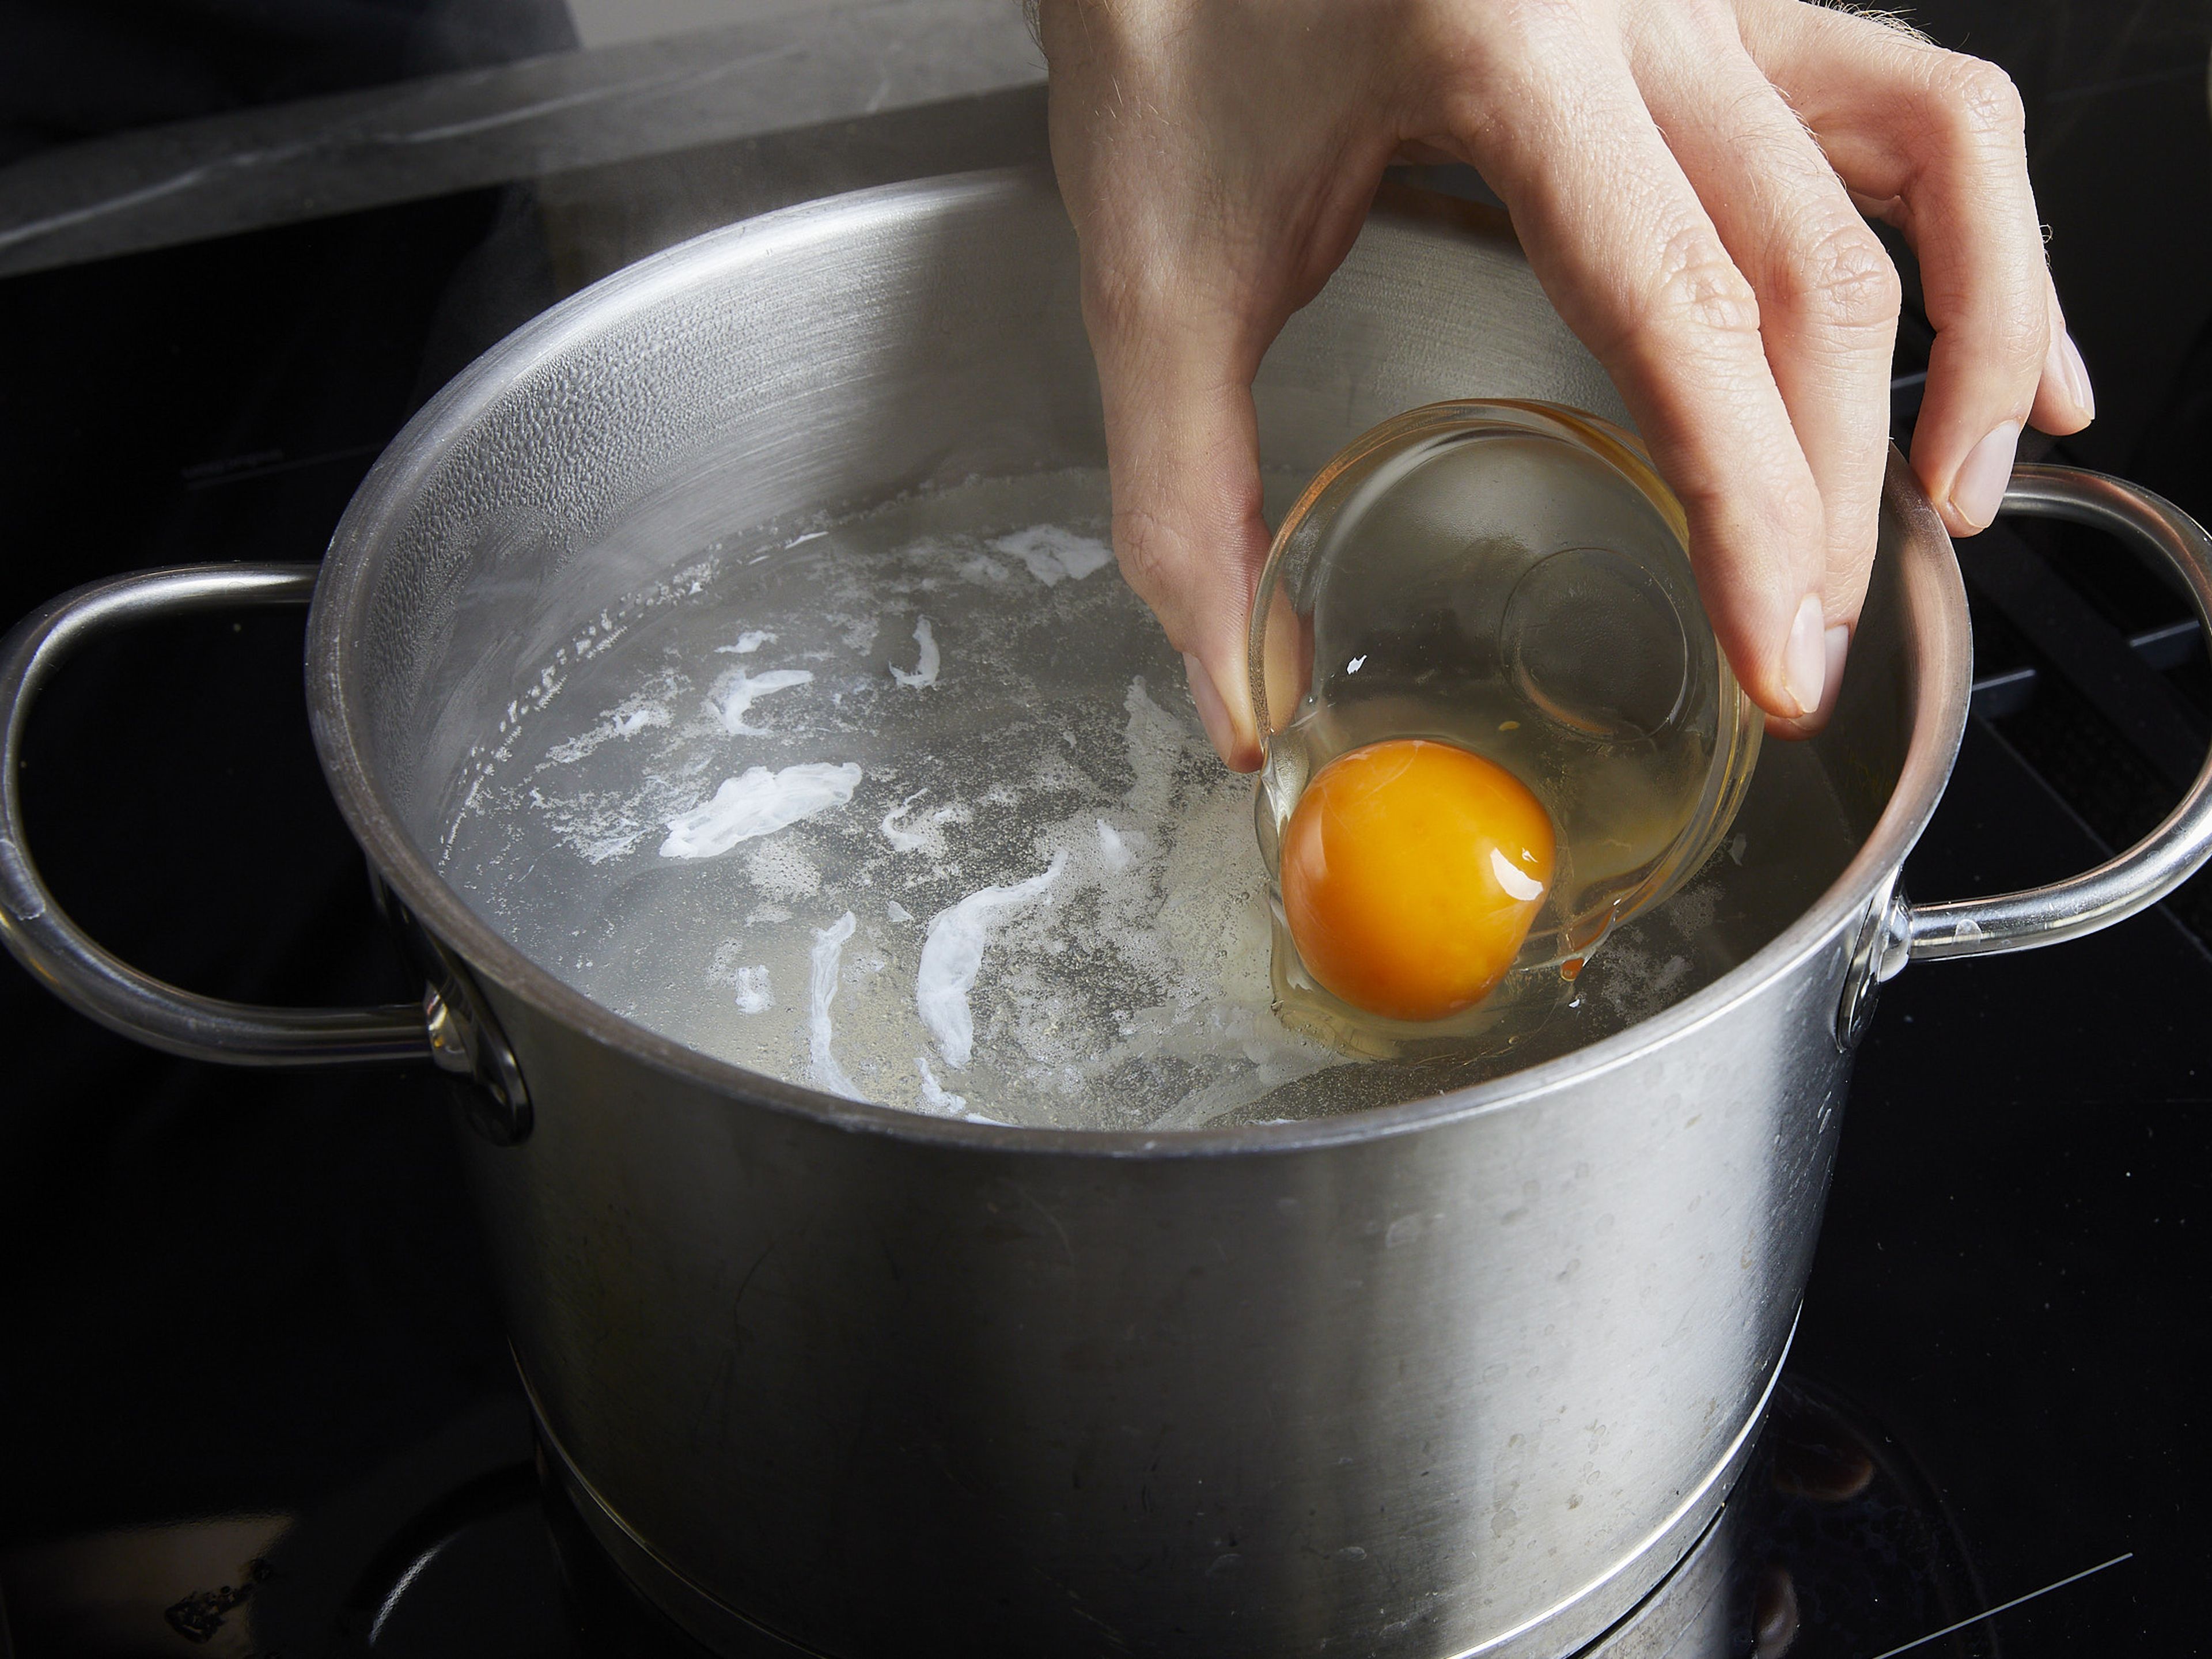 Um die Eier für die Eggs Benedict zu pochieren, einen mittelgroßen Topf mit Wasser füllen und dieses zum Sieden (nicht Kochen!) bringen. Jedes Ei einzeln vorsichtig in ein feinmaschiges Sieb schlagen, um den wässrigen Teil des Eiweißes zu entfernen, und dann vorsichtig in eine kleine Schüssel geben. Jedes Ei einzeln in den Topf geben und das Wasser mit einem Löffel umrühren, um einen Strudel zu erzeugen. Die Eier ca. 3–4 Min. kochen, bis das Eiweiß fest ist, dann mit einem Schaumlöffel oder einem Sieb herausnehmen. Diesen Schritt mit den restlichen Eiern wiederholen.